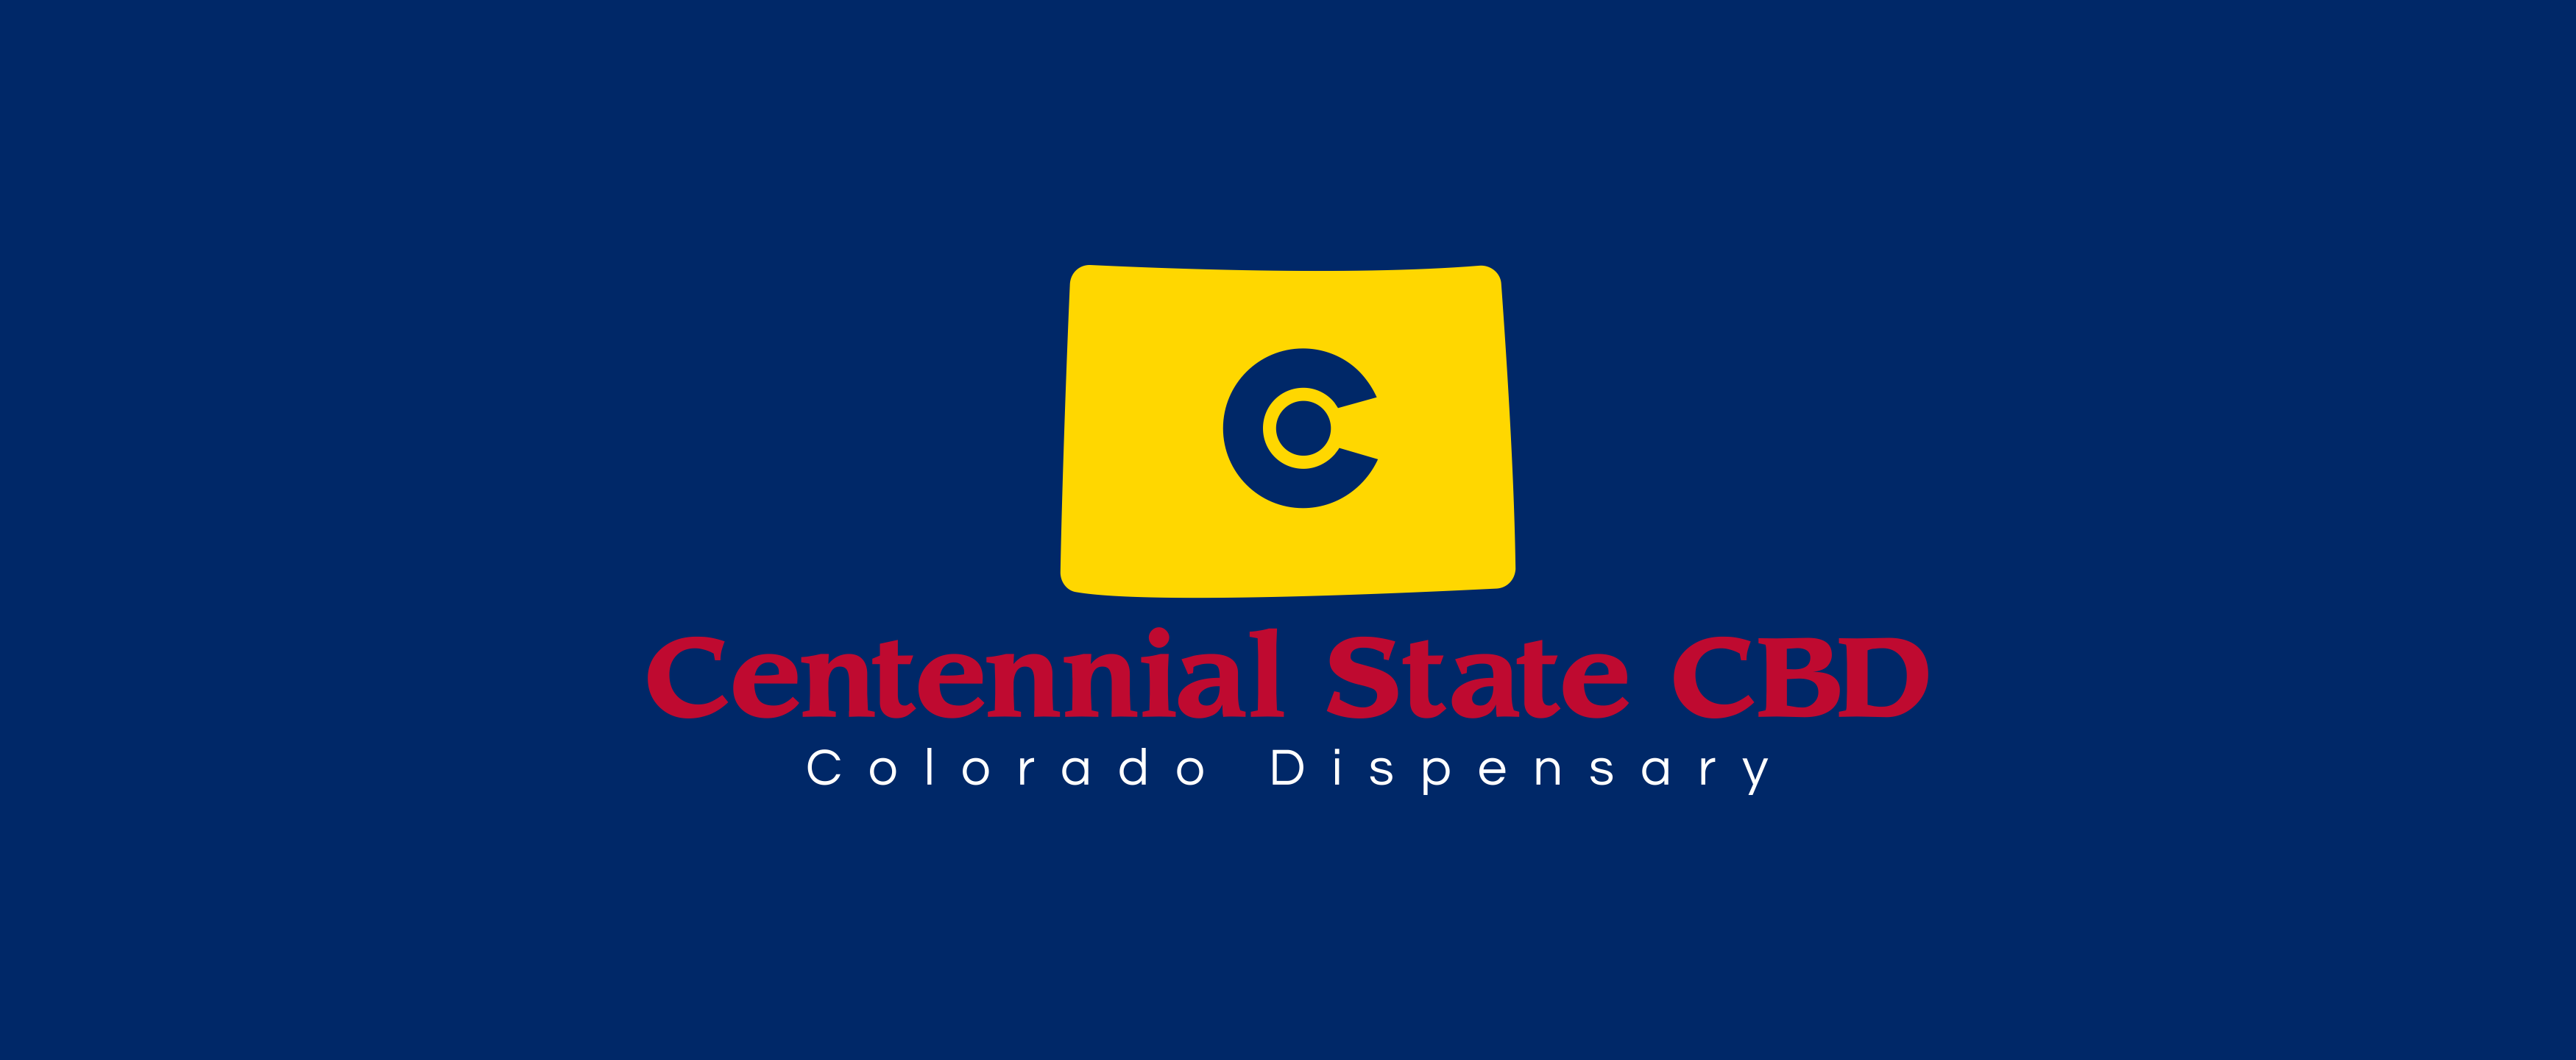 Centennial State CBD